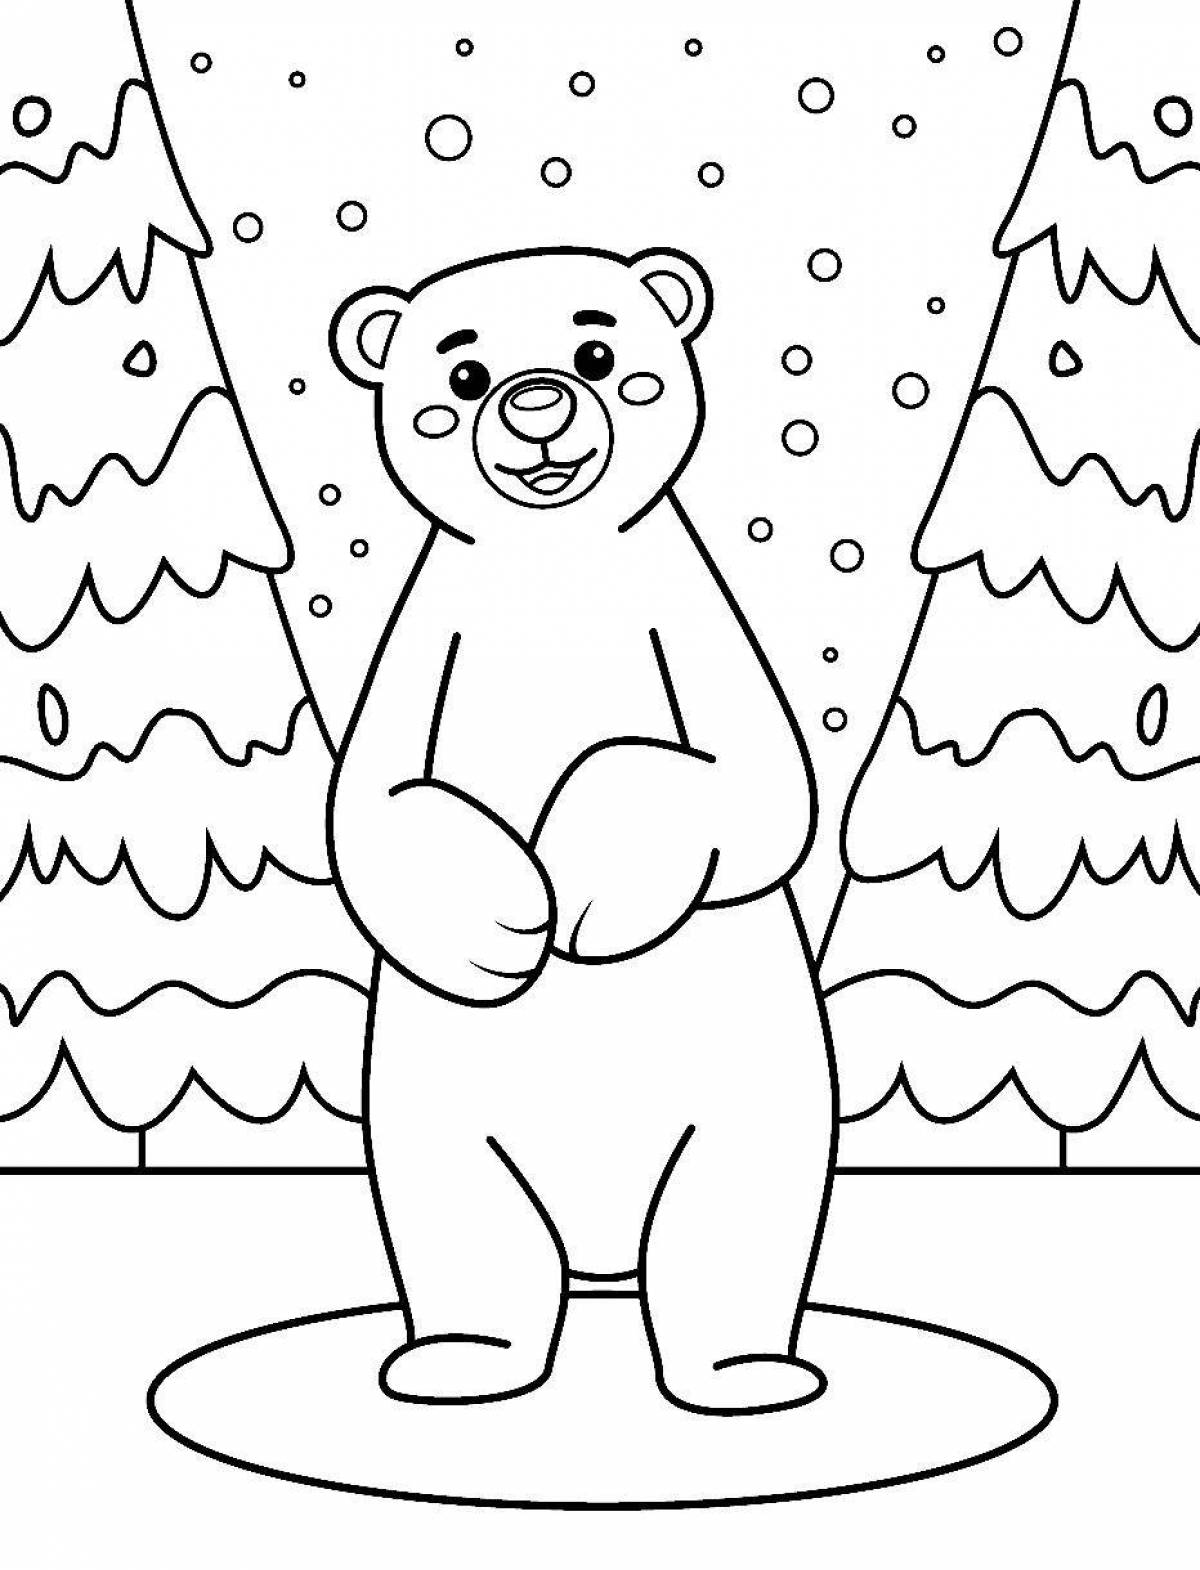 Красочная раскраска «белый медведь» для детей 2-3 лет